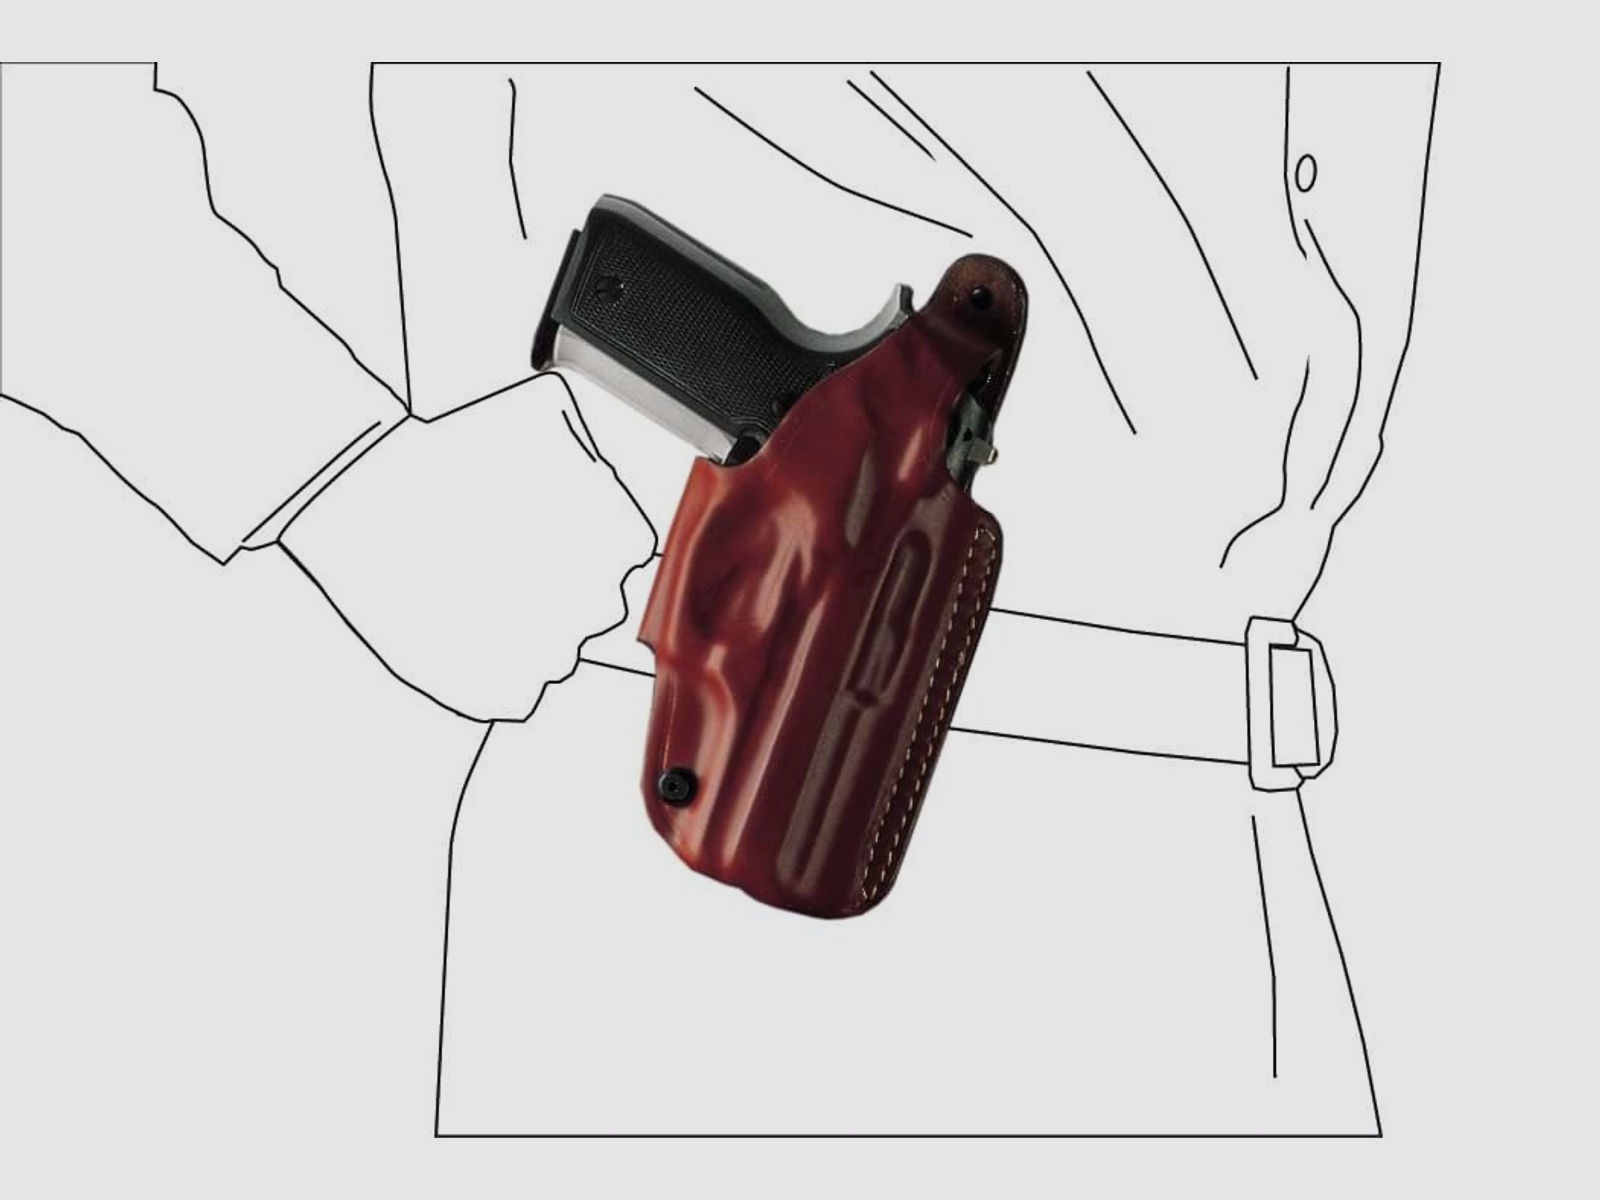 Schnellziehholster mit drei Tragepositionen Glock 20/21, H&K USP, P30L, SFP9-VP9, CZ P07-Schwarz-Linkshänder